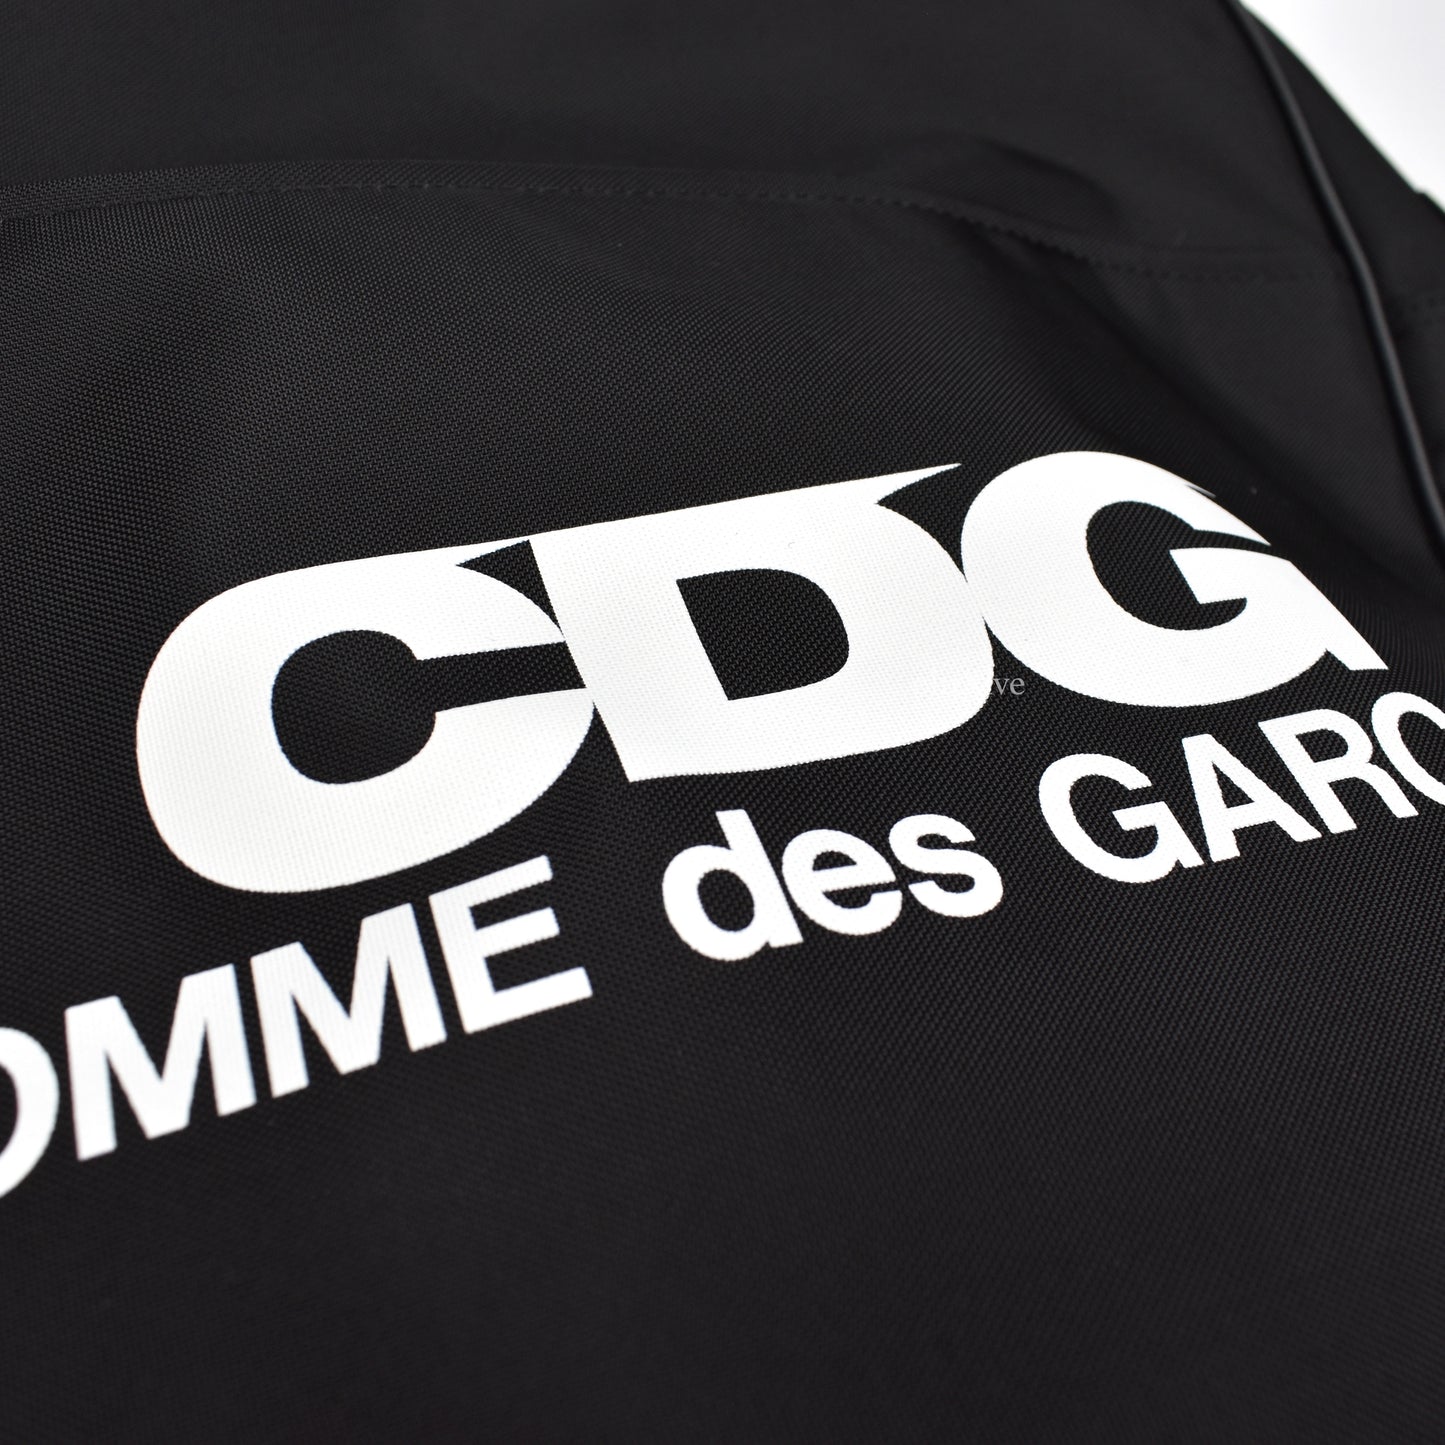 Comme Des Garcons - Black CDG Logo 'Airline' Bag